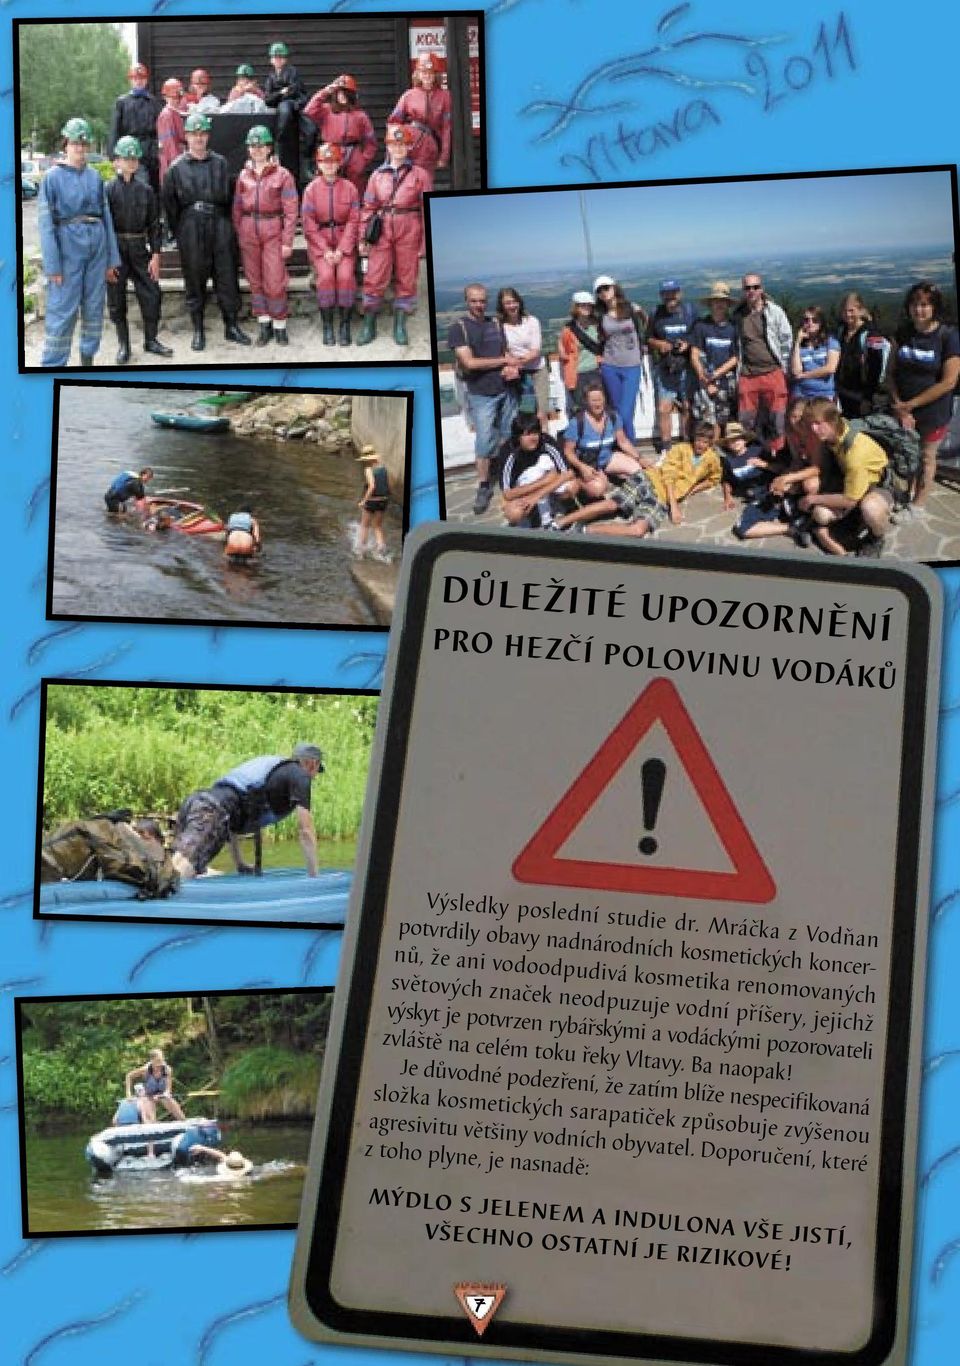 příšery, jejichž výskyt je potvrzen rybářskými a vodáckými pozorovateli zvláště na celém toku řeky Vltavy. Ba naopak!